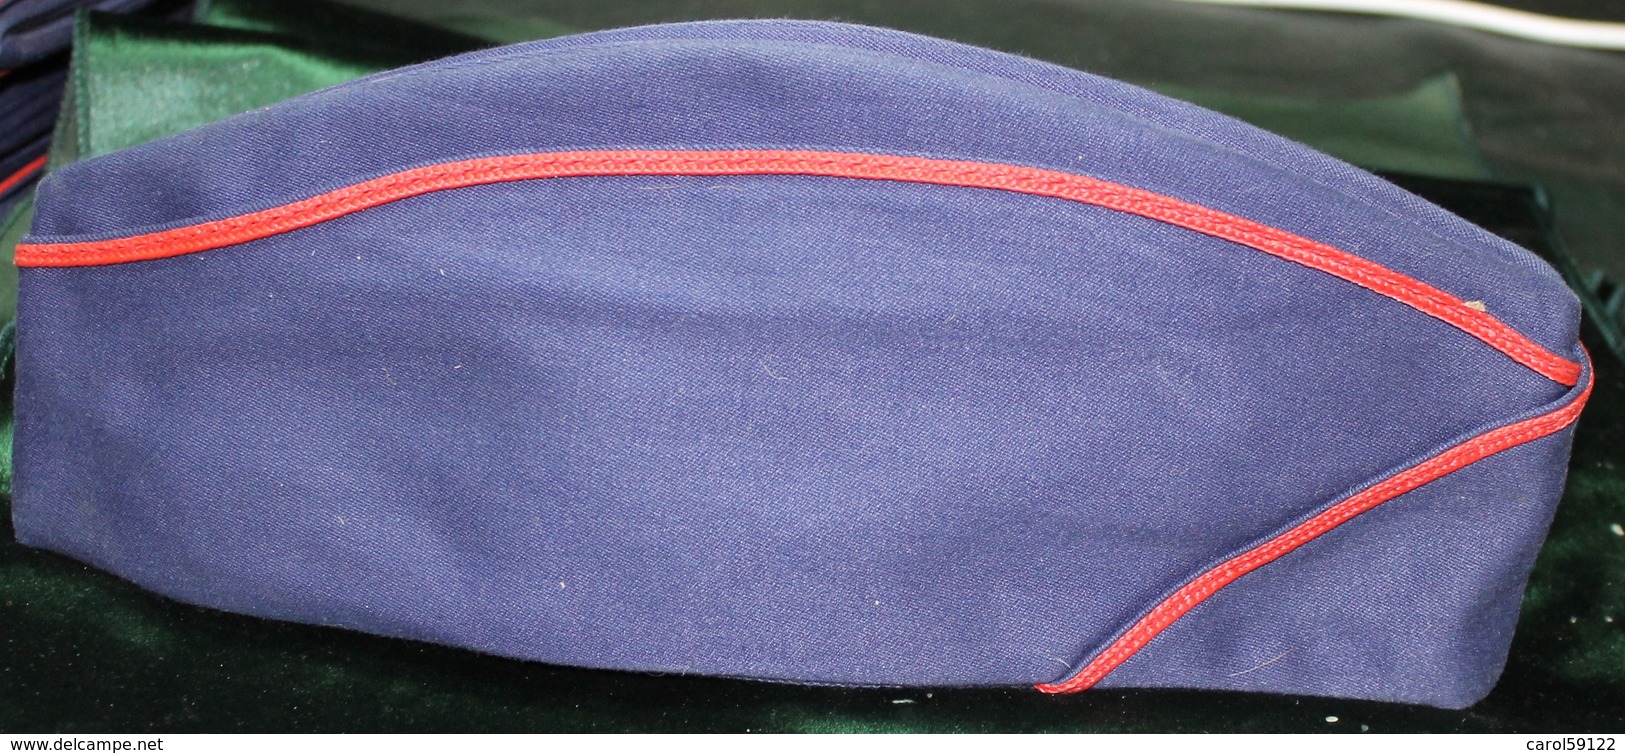 Calot Tissus Bleu Marine T 59 - Headpieces, Headdresses